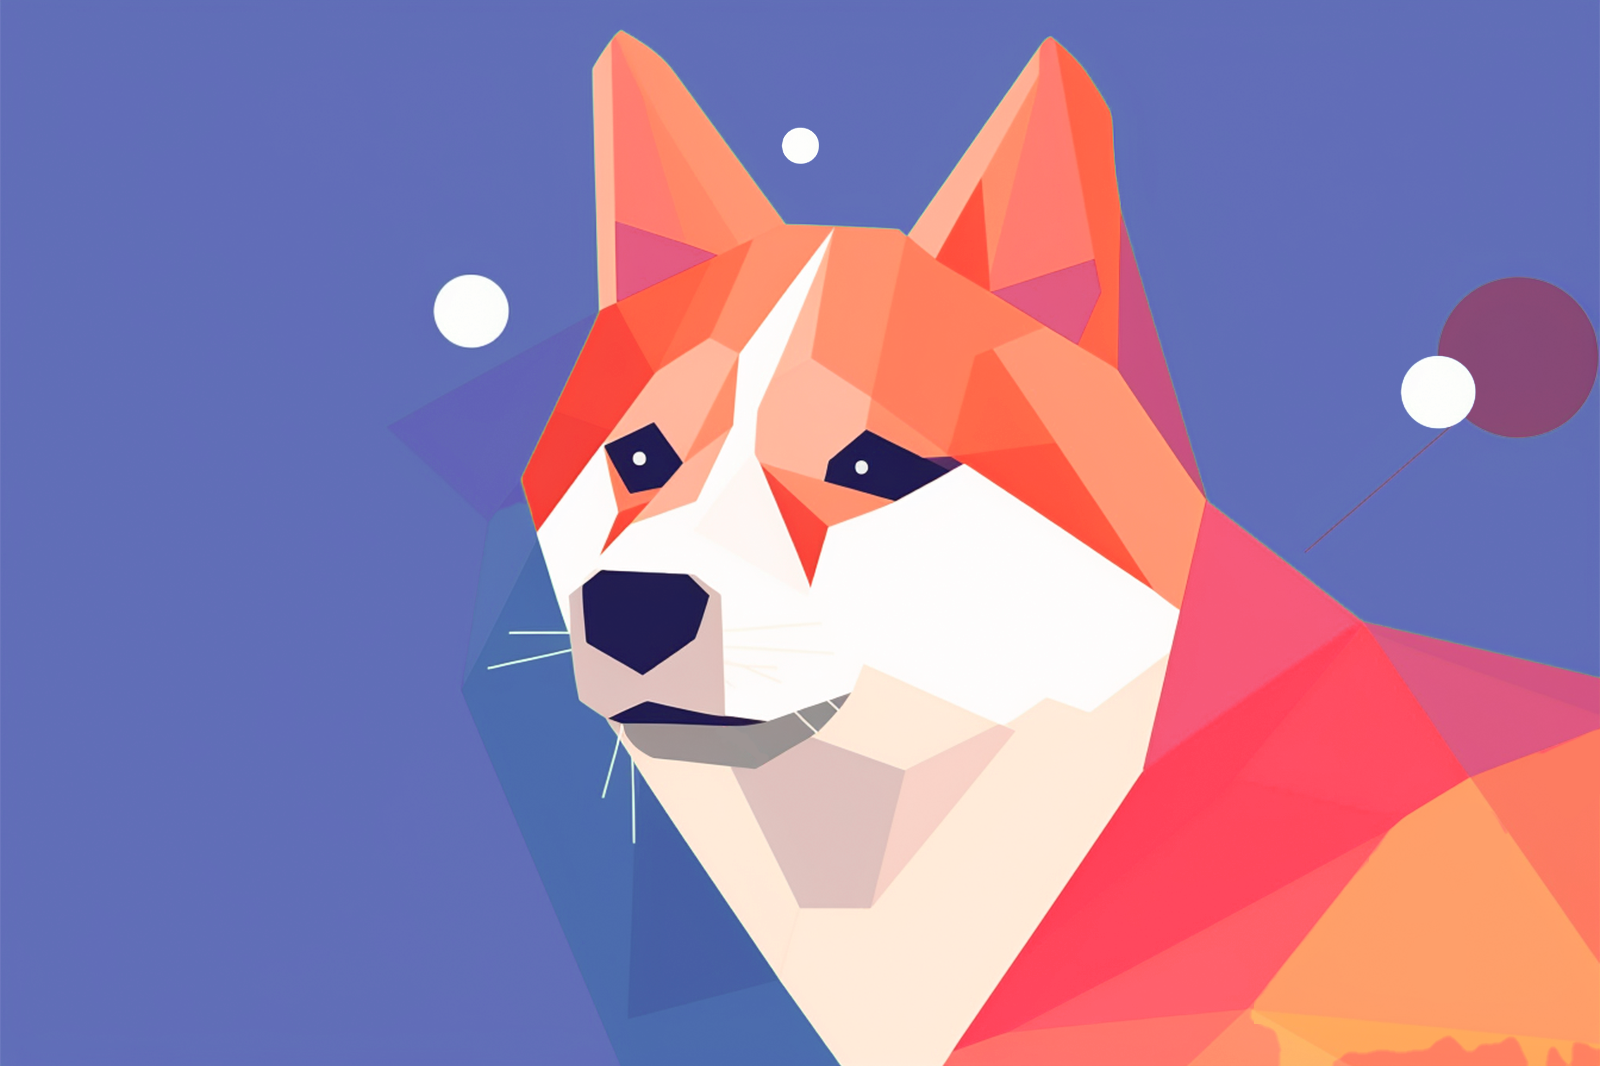 A geometric polygon fox against a blue background